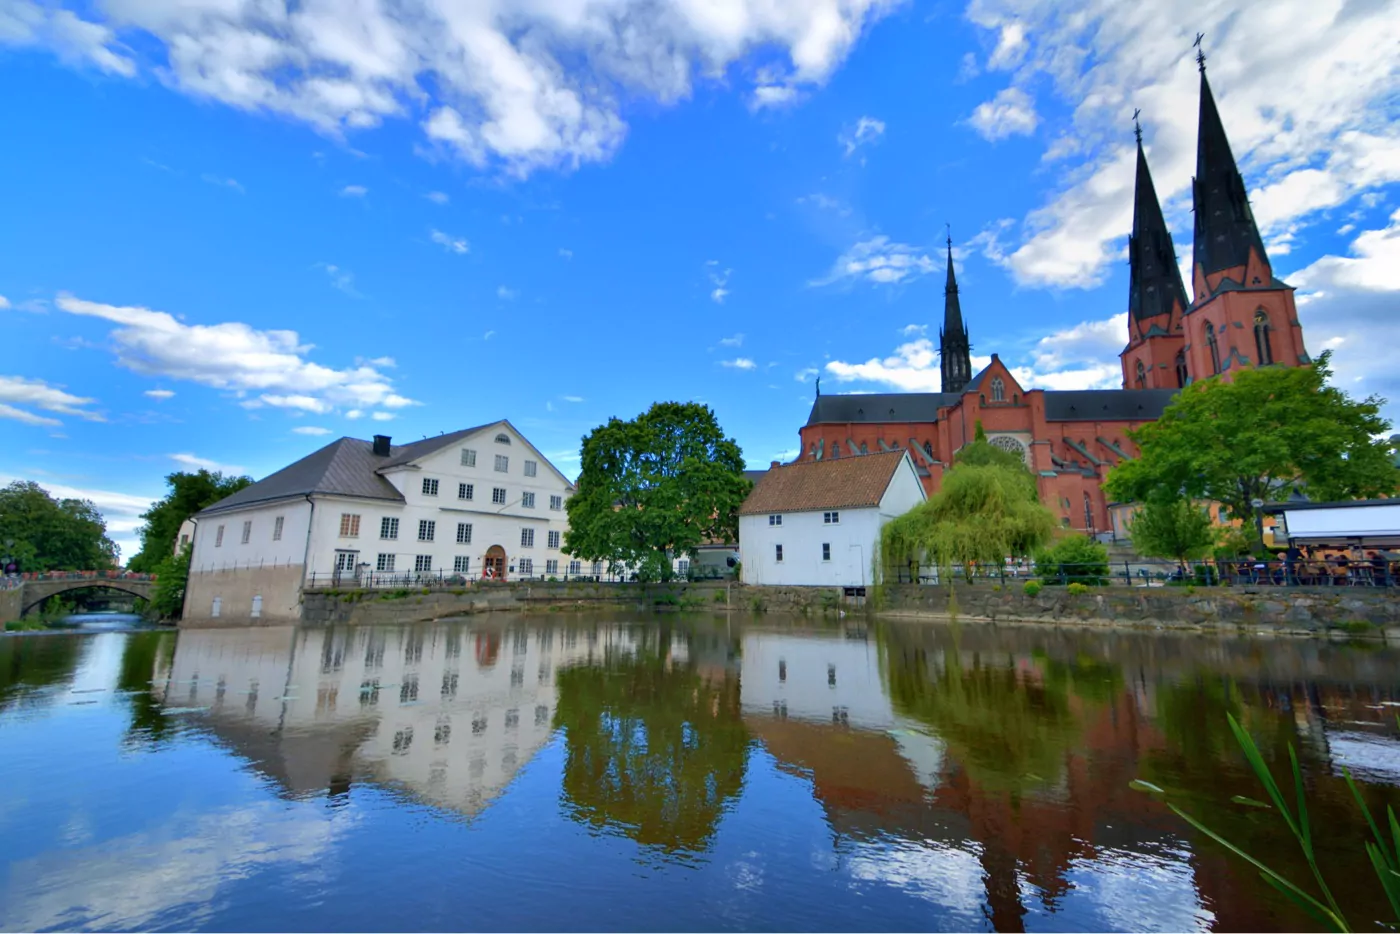 Centrala uppsala vid fyrisån med Uppsala domkyrkan och upplandsmuseet i bakgrunden